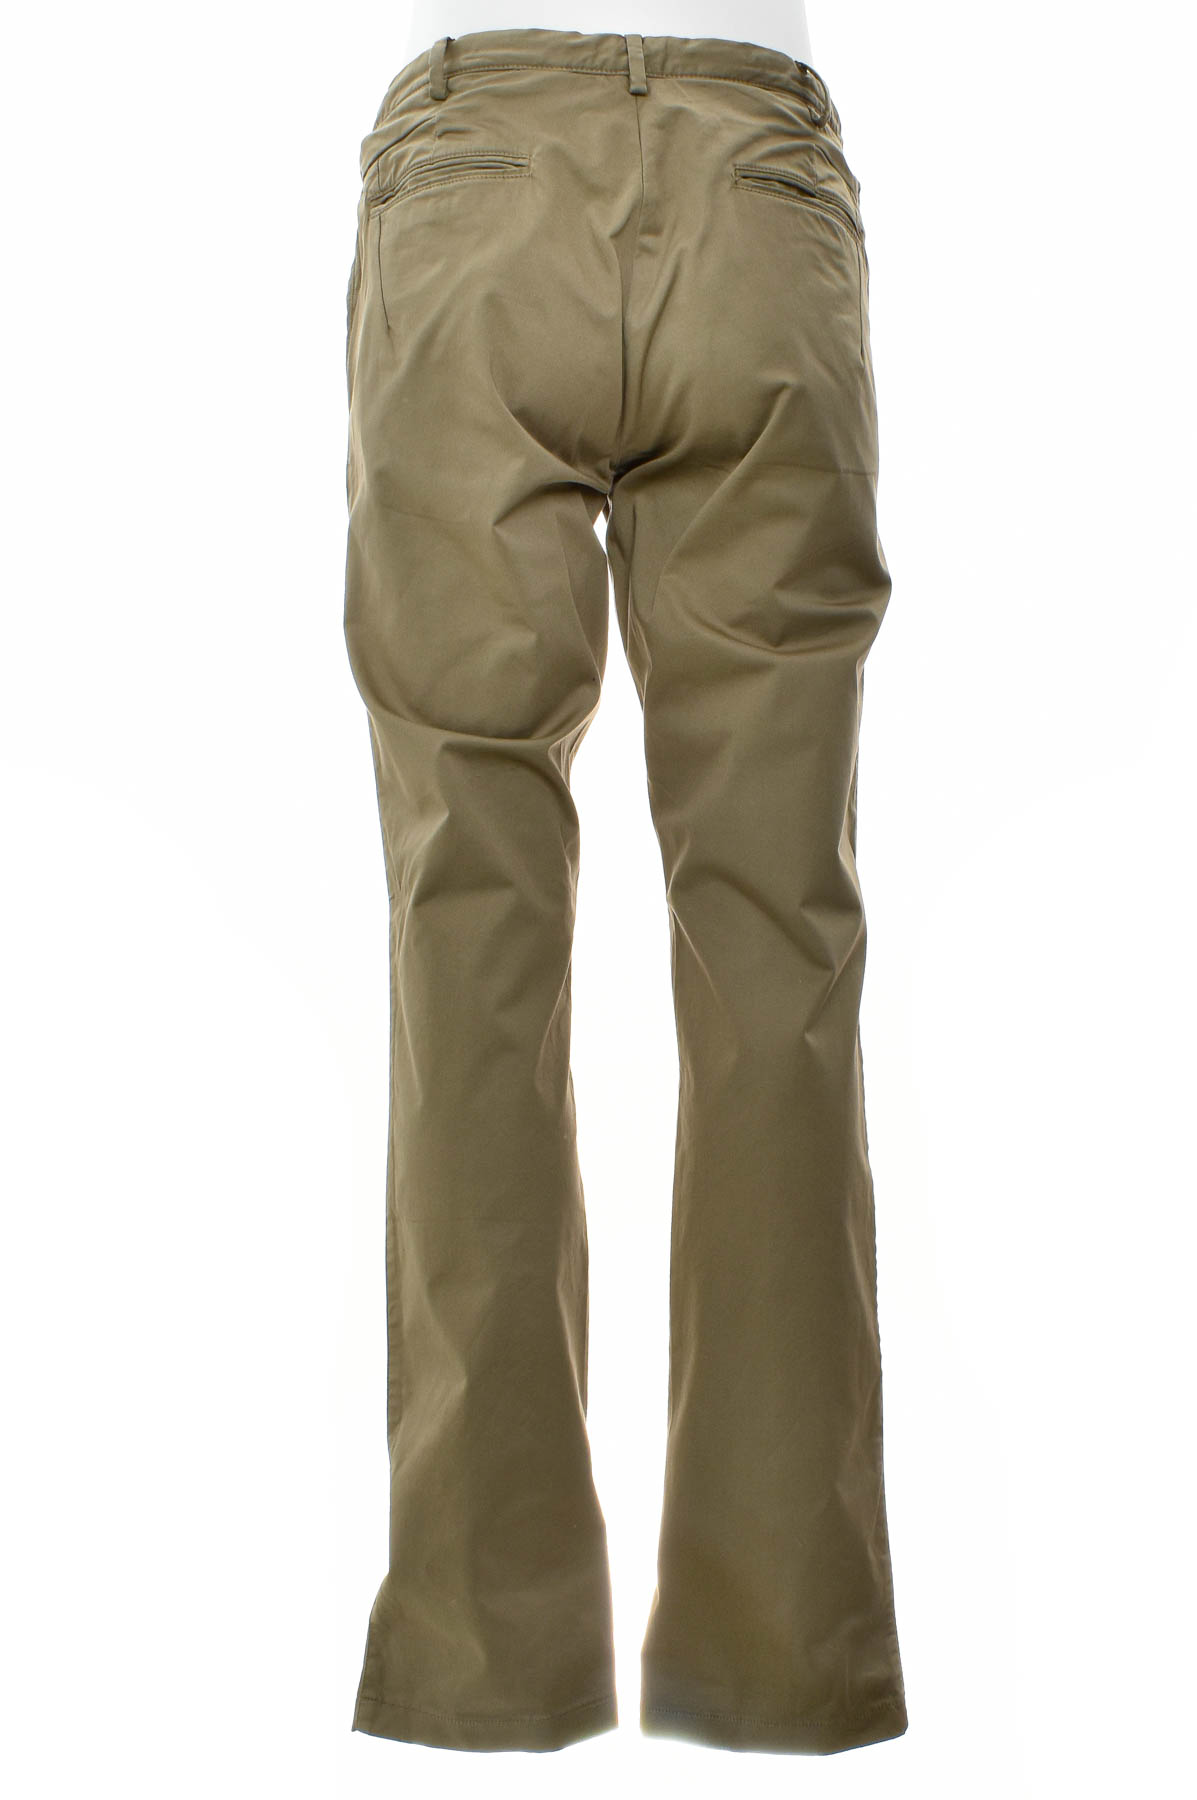 Men's trousers - David Naman - 1